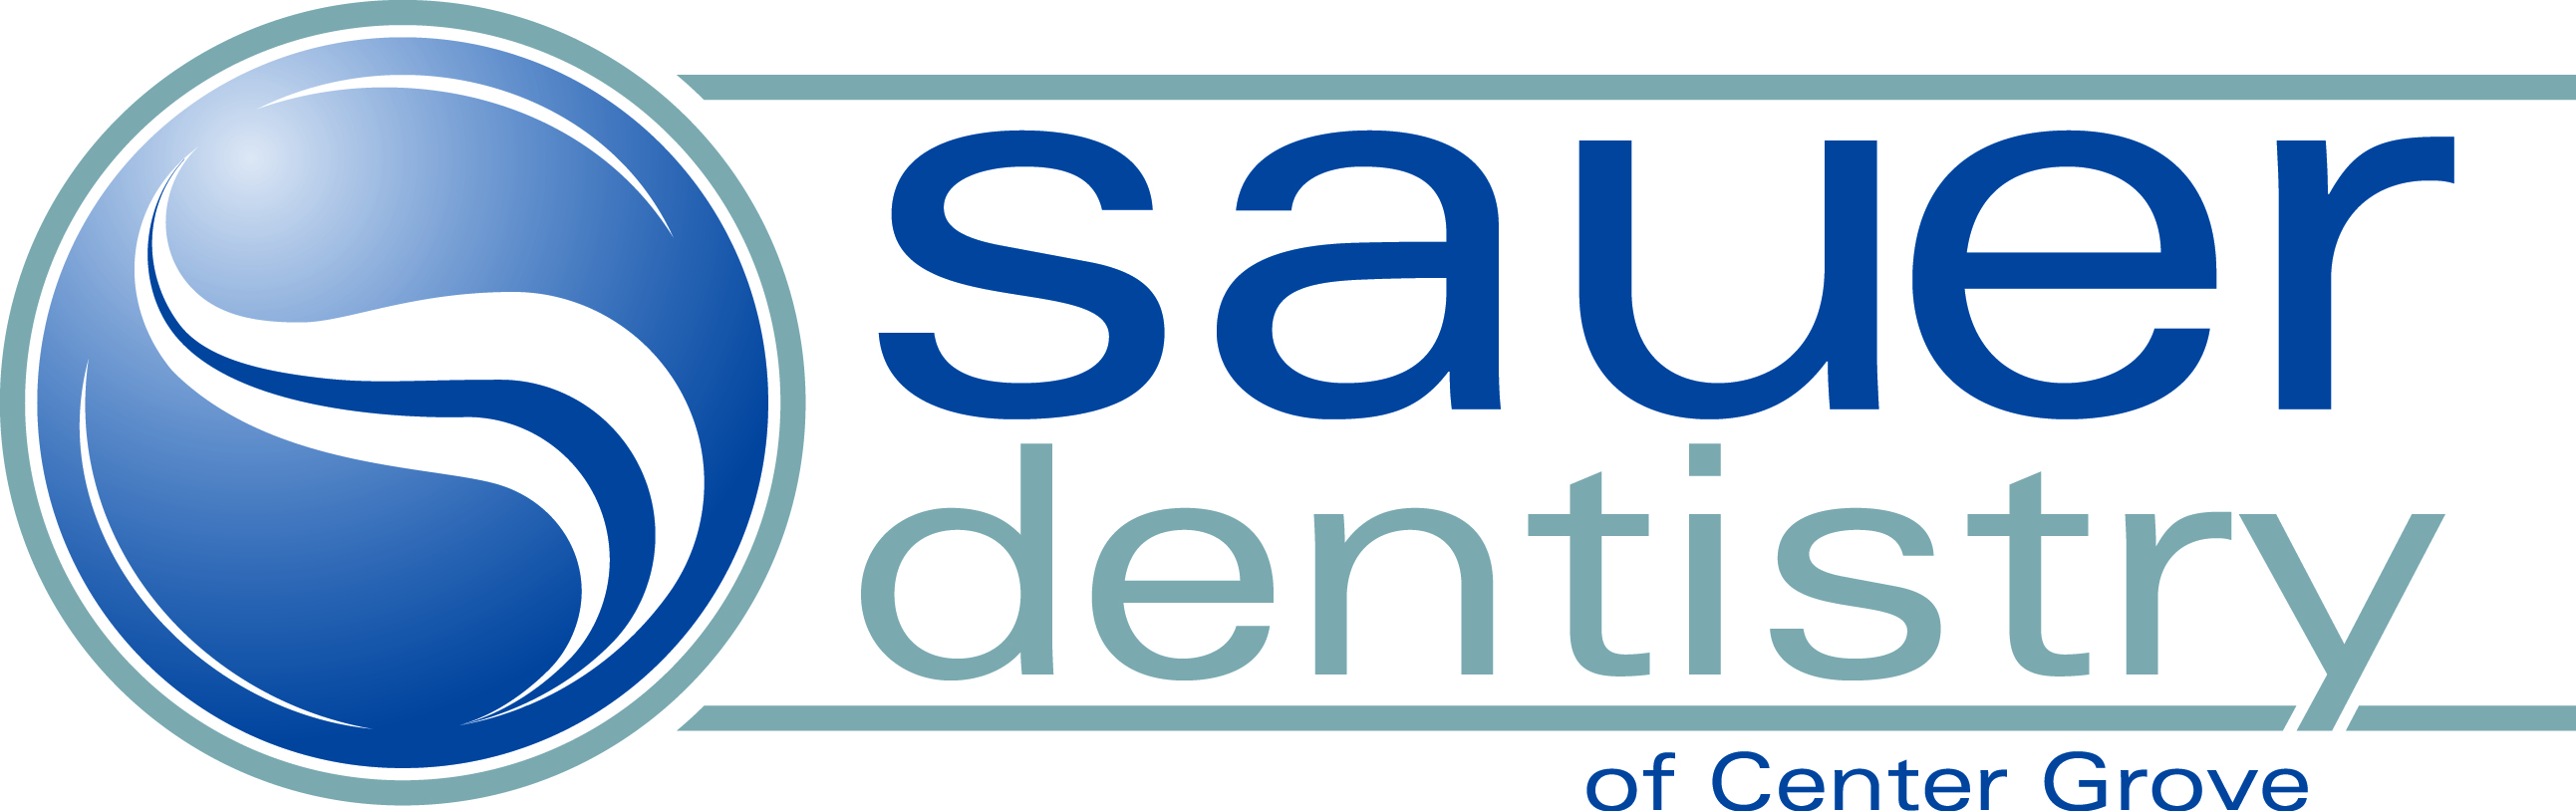 Saur Dentistry